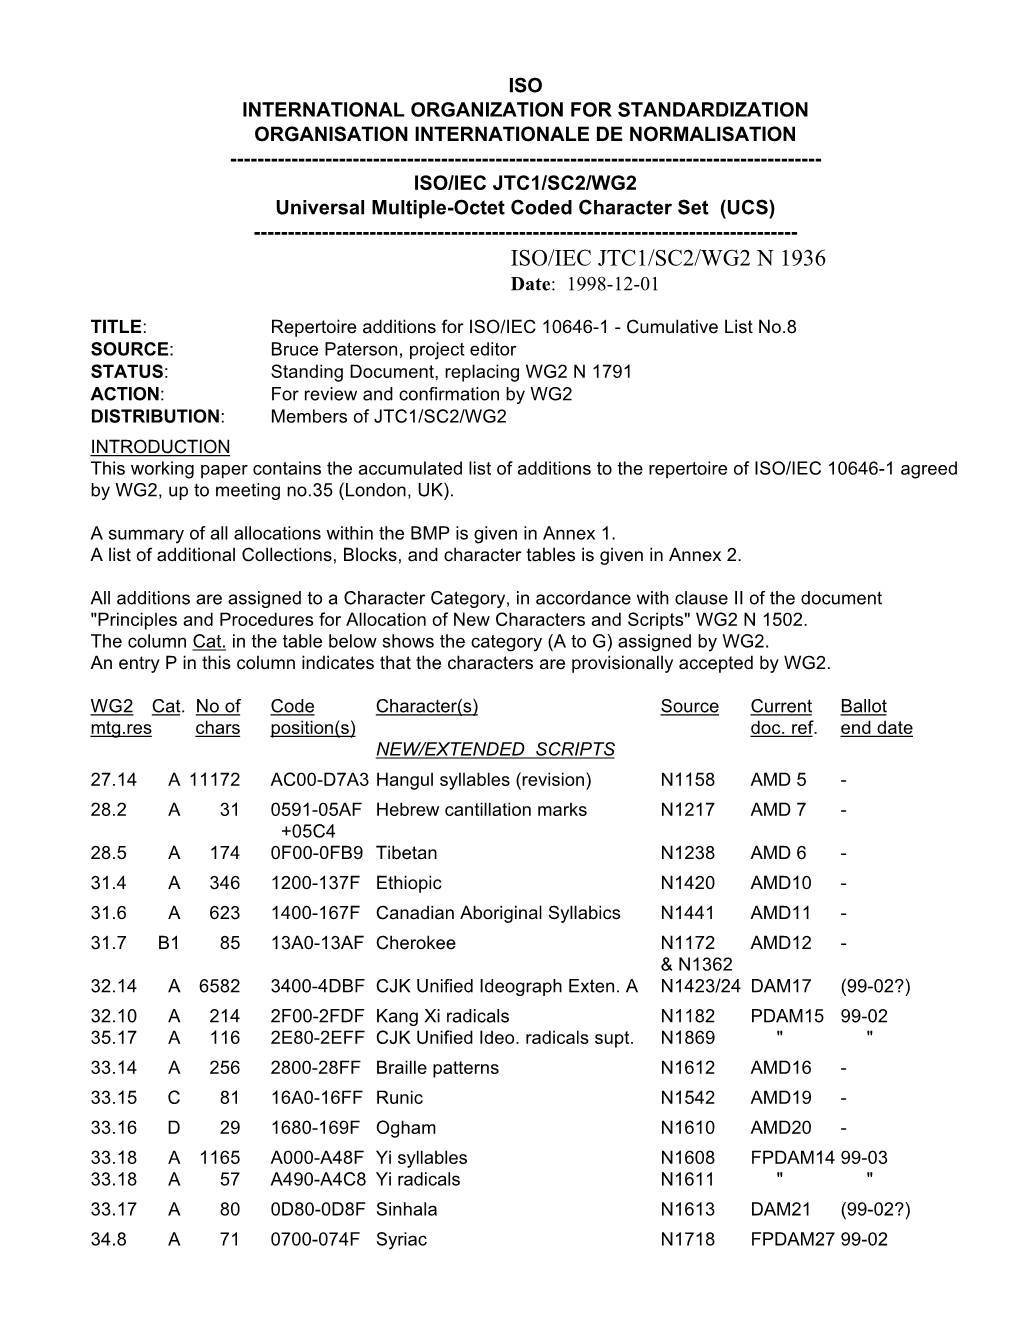 ISO/IEC JTC1/SC2/WG2 N 1936 Date: 1998-12-01